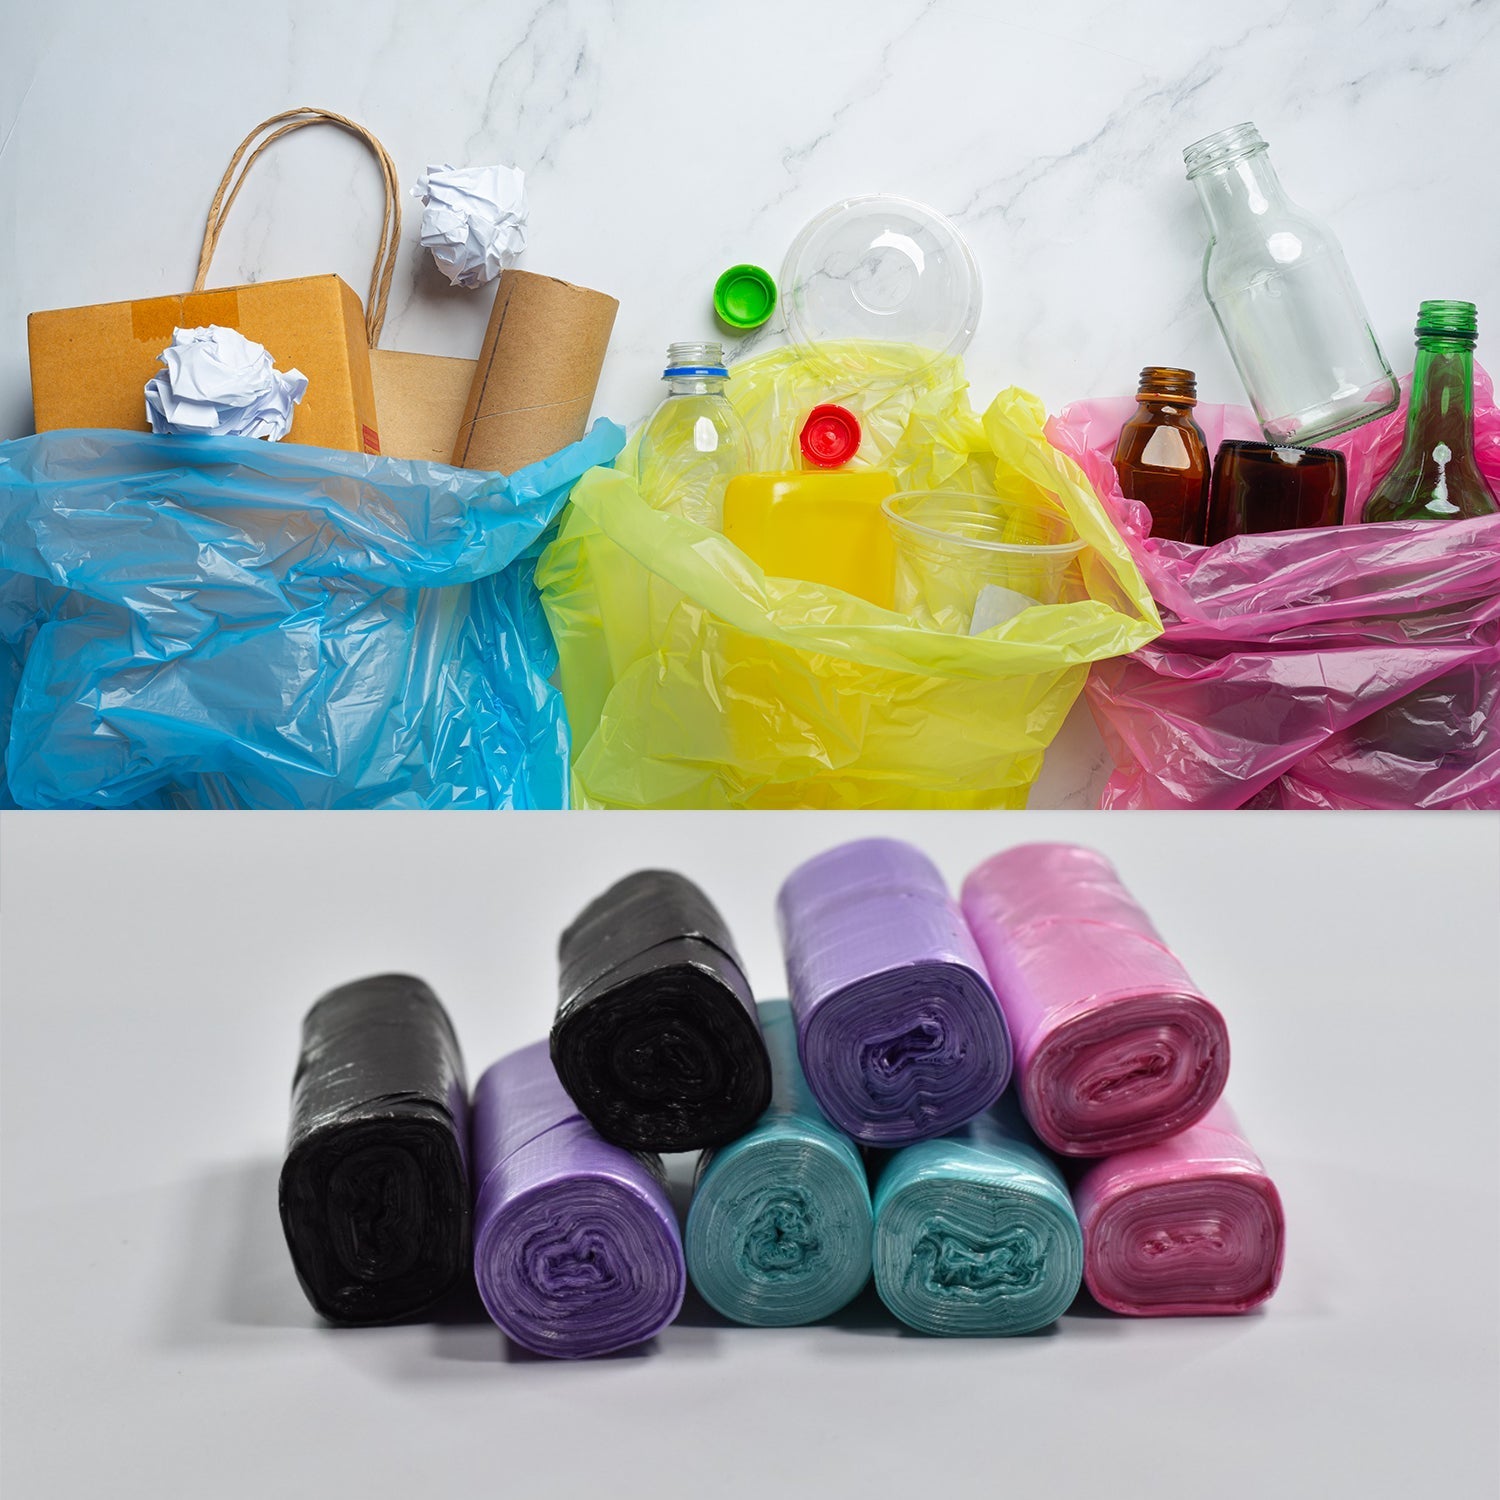 9204 Garbage Bags/Dustbin Bags/Trash Bags Pack of 8Rolls 45x50cm DeoDap